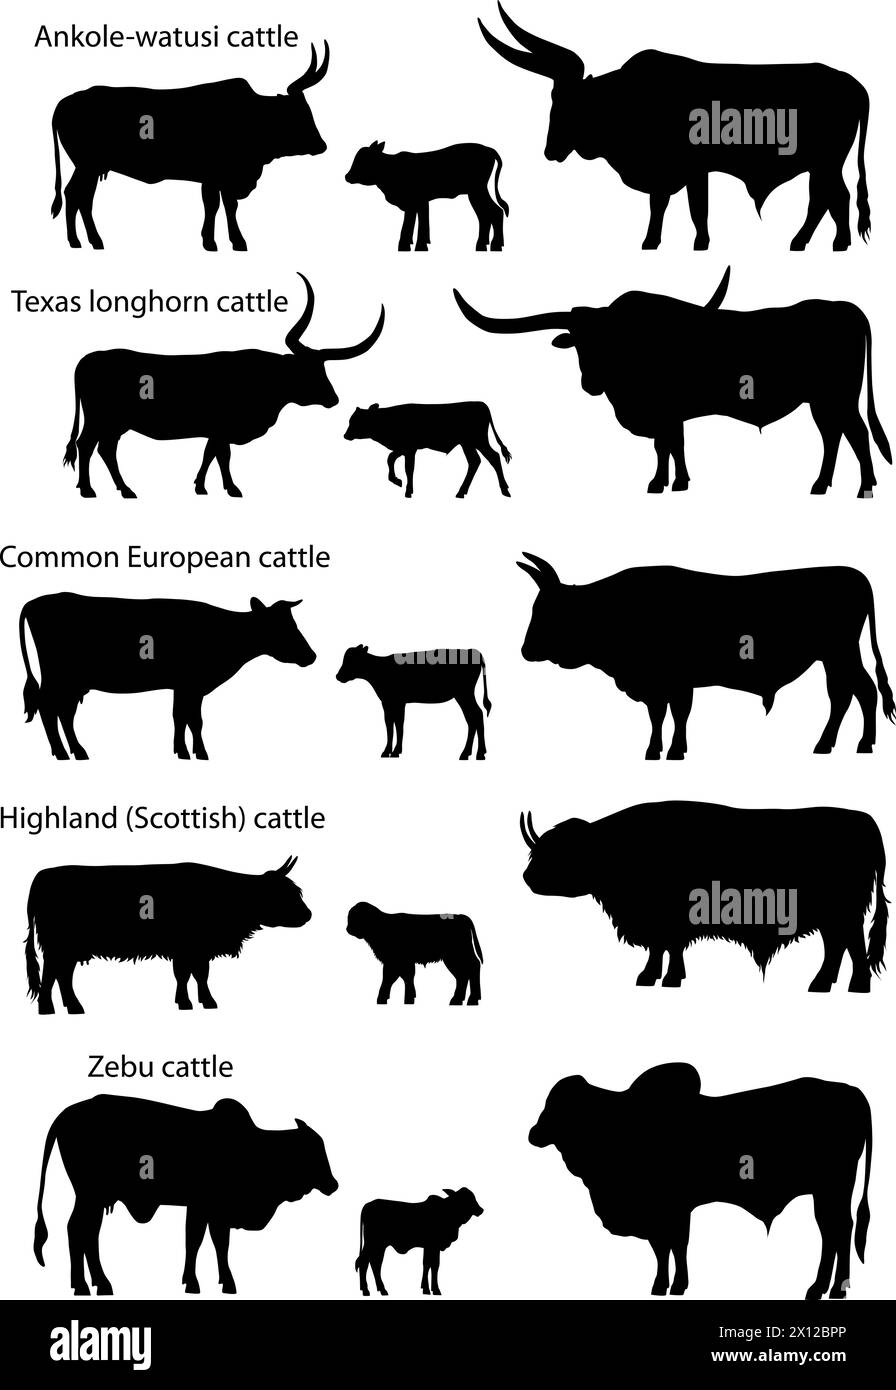 Collection de silhouettes de différentes espèces de bovins : européen commun, texas longhorn, Highland (écossais), watusi (ankole-watusi), zébu Illustration de Vecteur